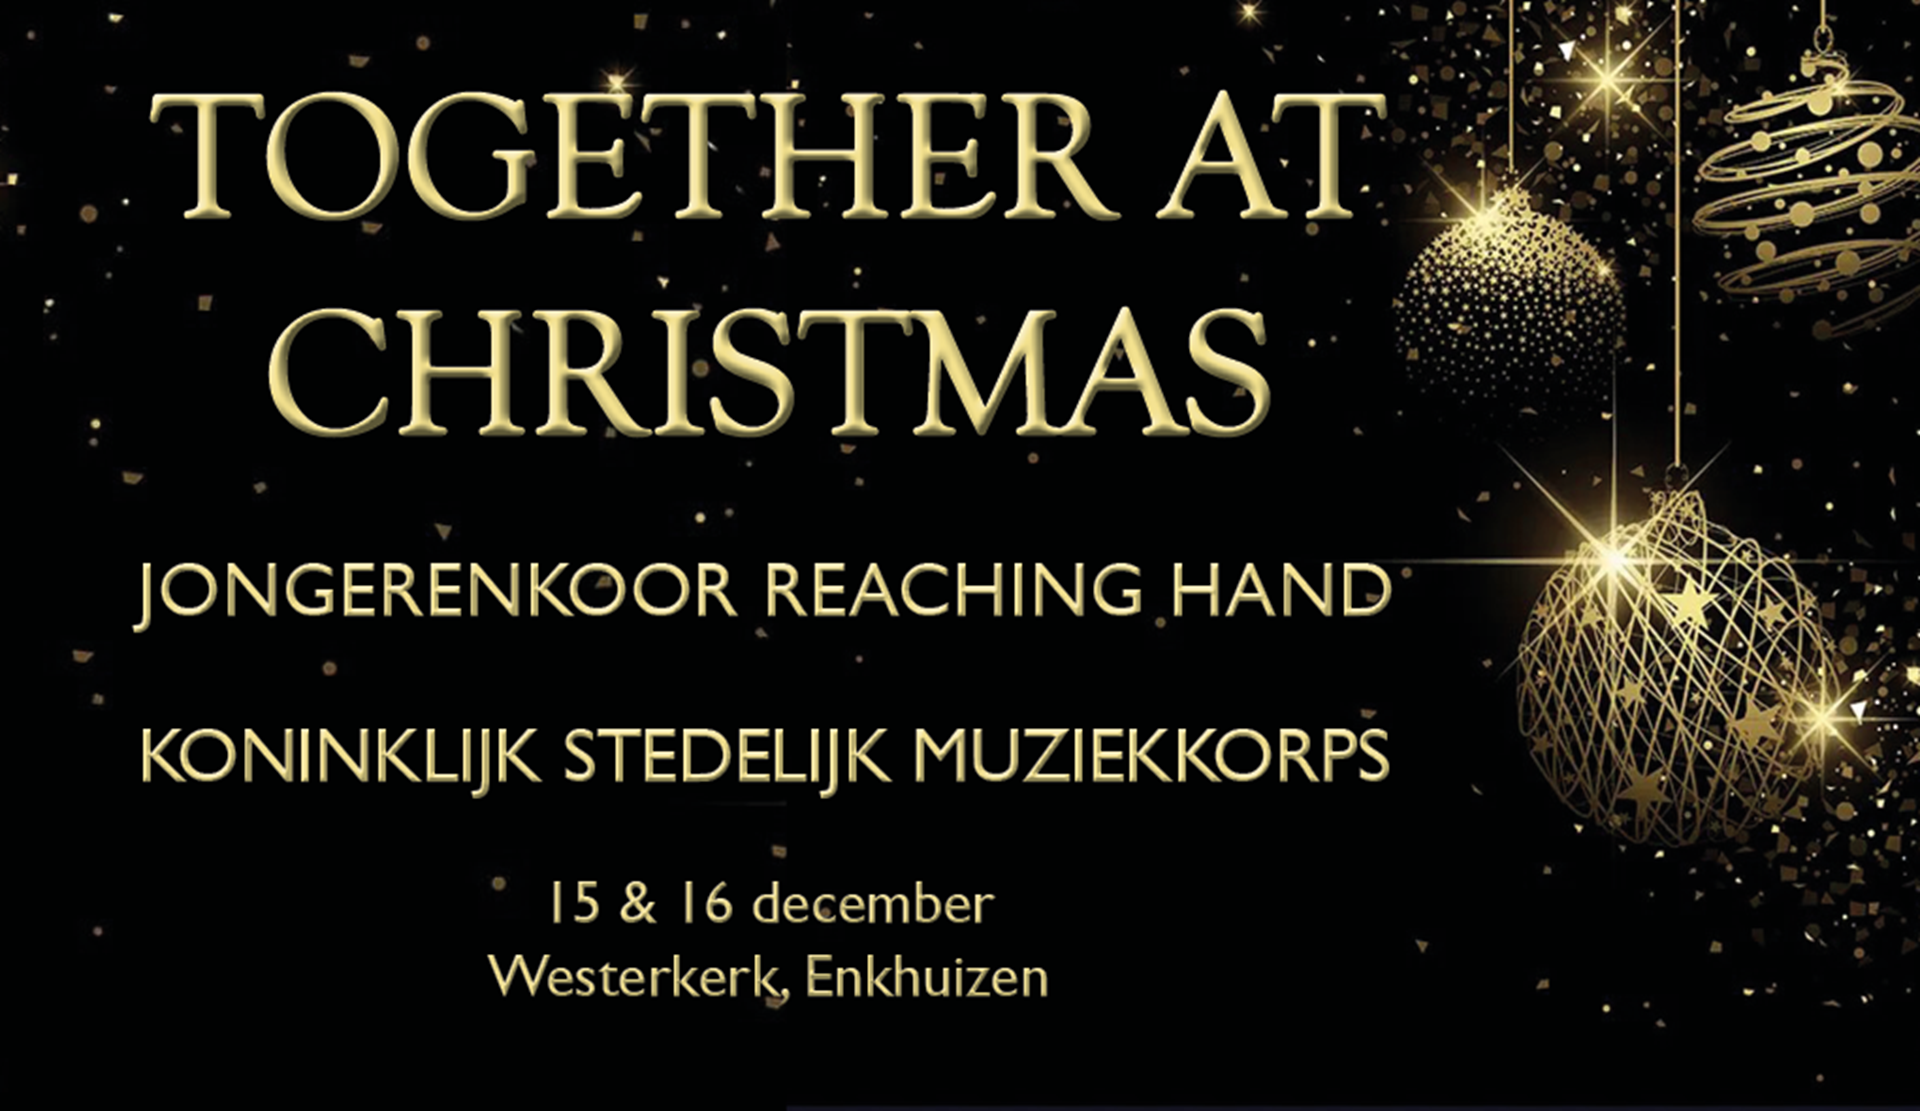 Together at Christmas - Reaching Hand en het Koninklijk Stedelijk Muziekkorps banner